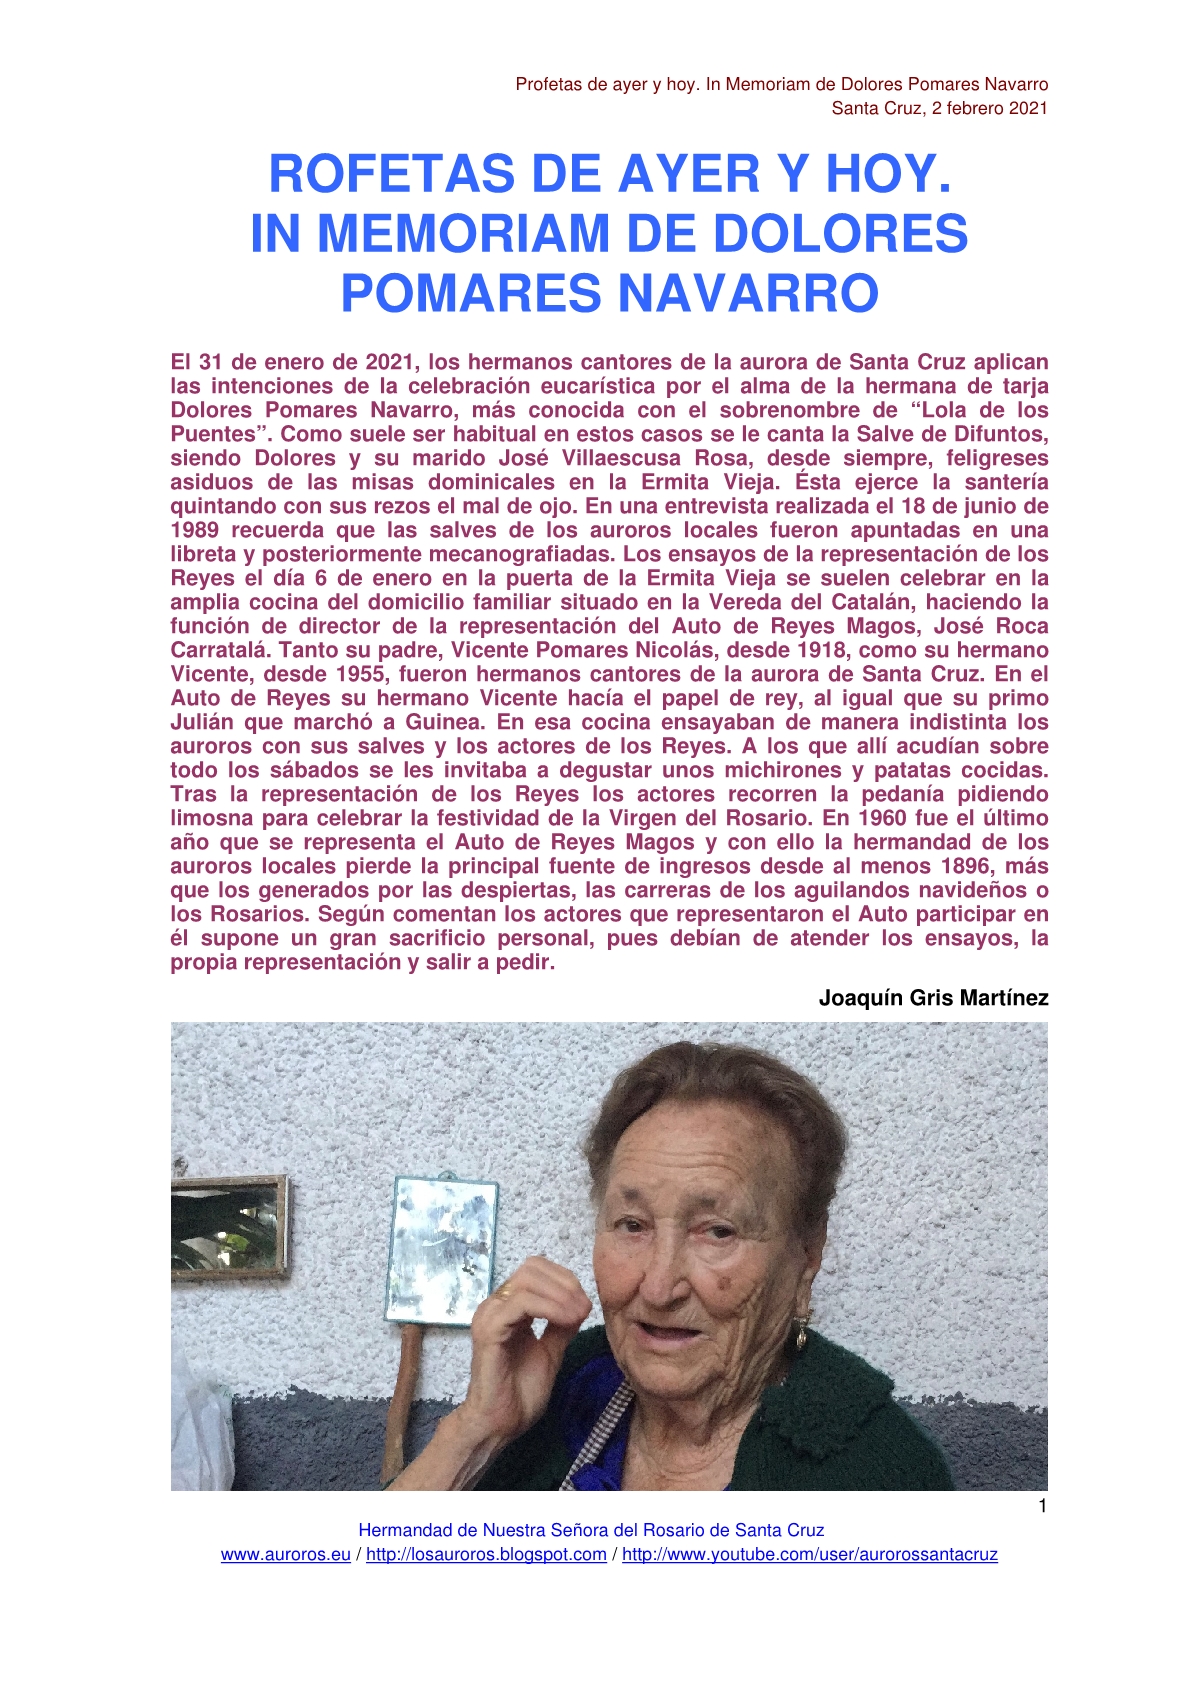 PROFETAS DE AYER Y HOY. IN MEMORIAM DOLORES POMARES NAVARRO